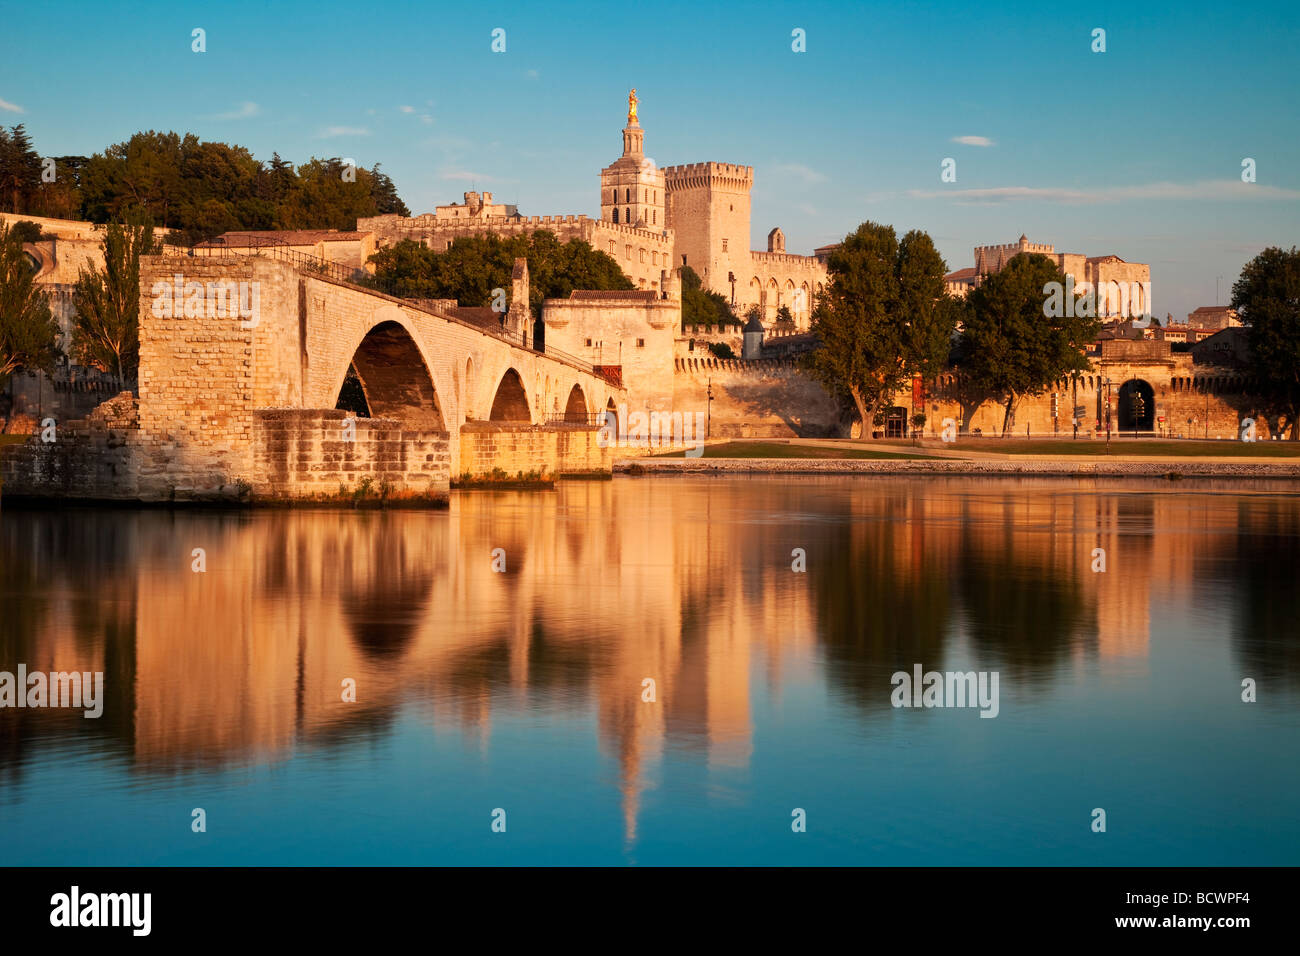 Pont St Bénézet sur le fleuve Rhône avec le Palais des Papes, Avignon Provence France Banque D'Images